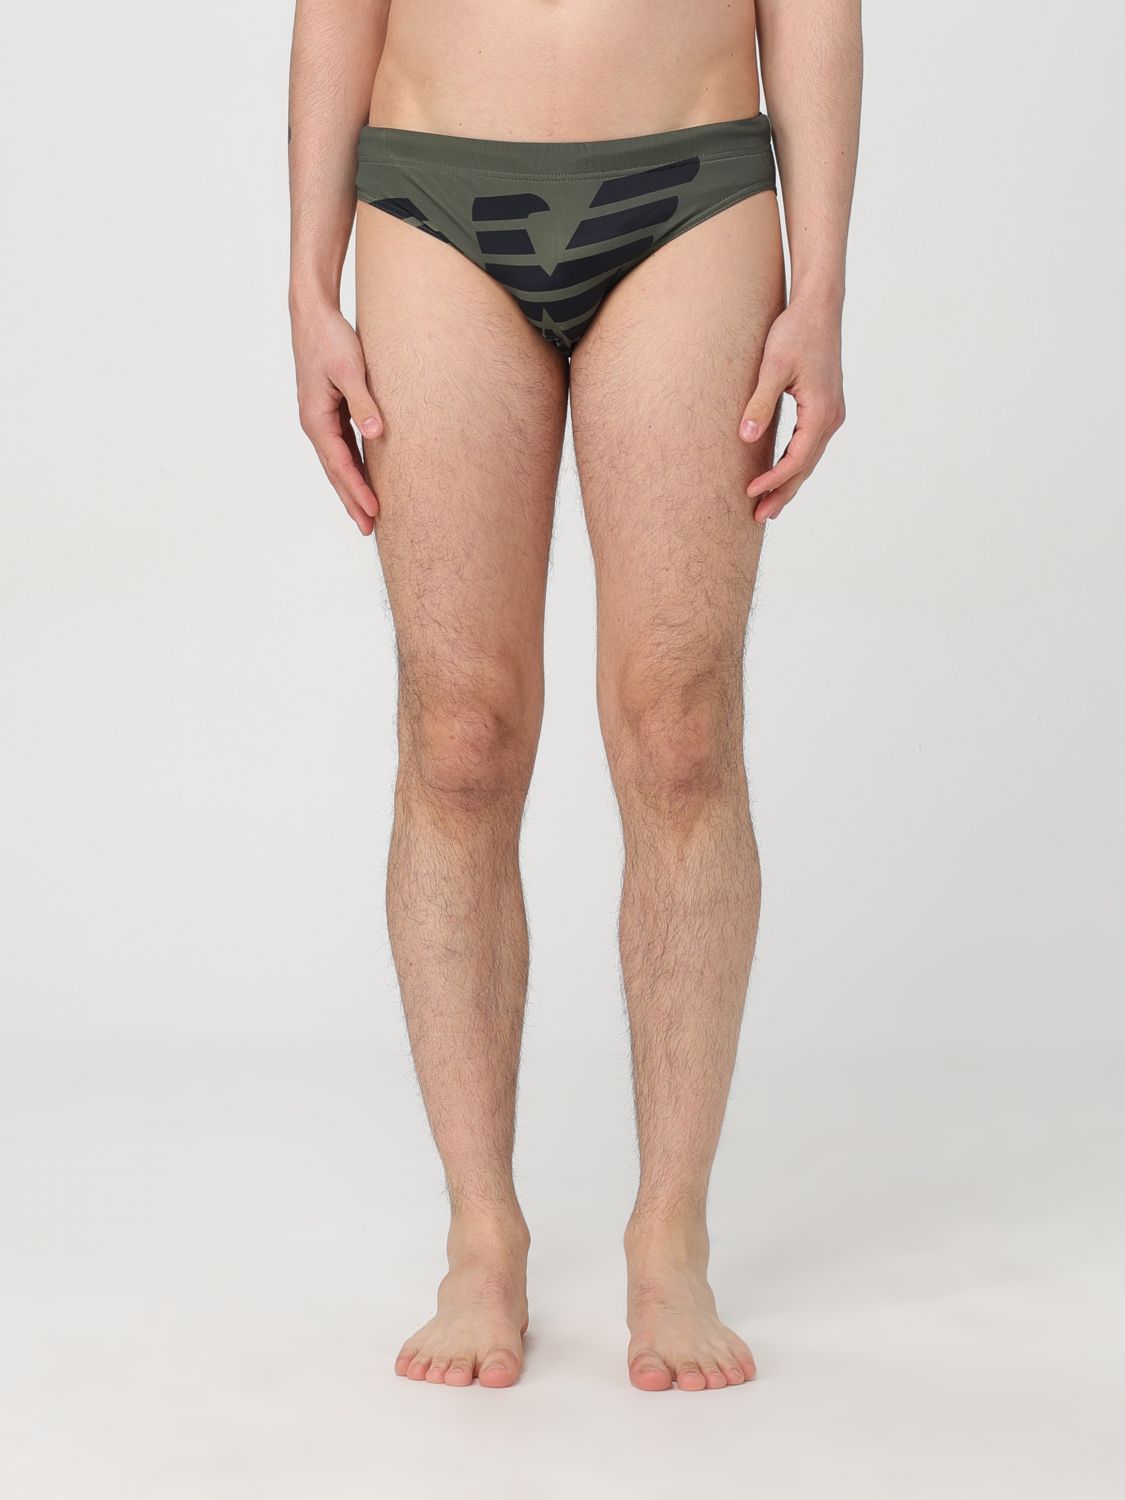 Swimsuit EMPORIO ARMANI SWIMWEAR Men colour Military - Size: 48 - male